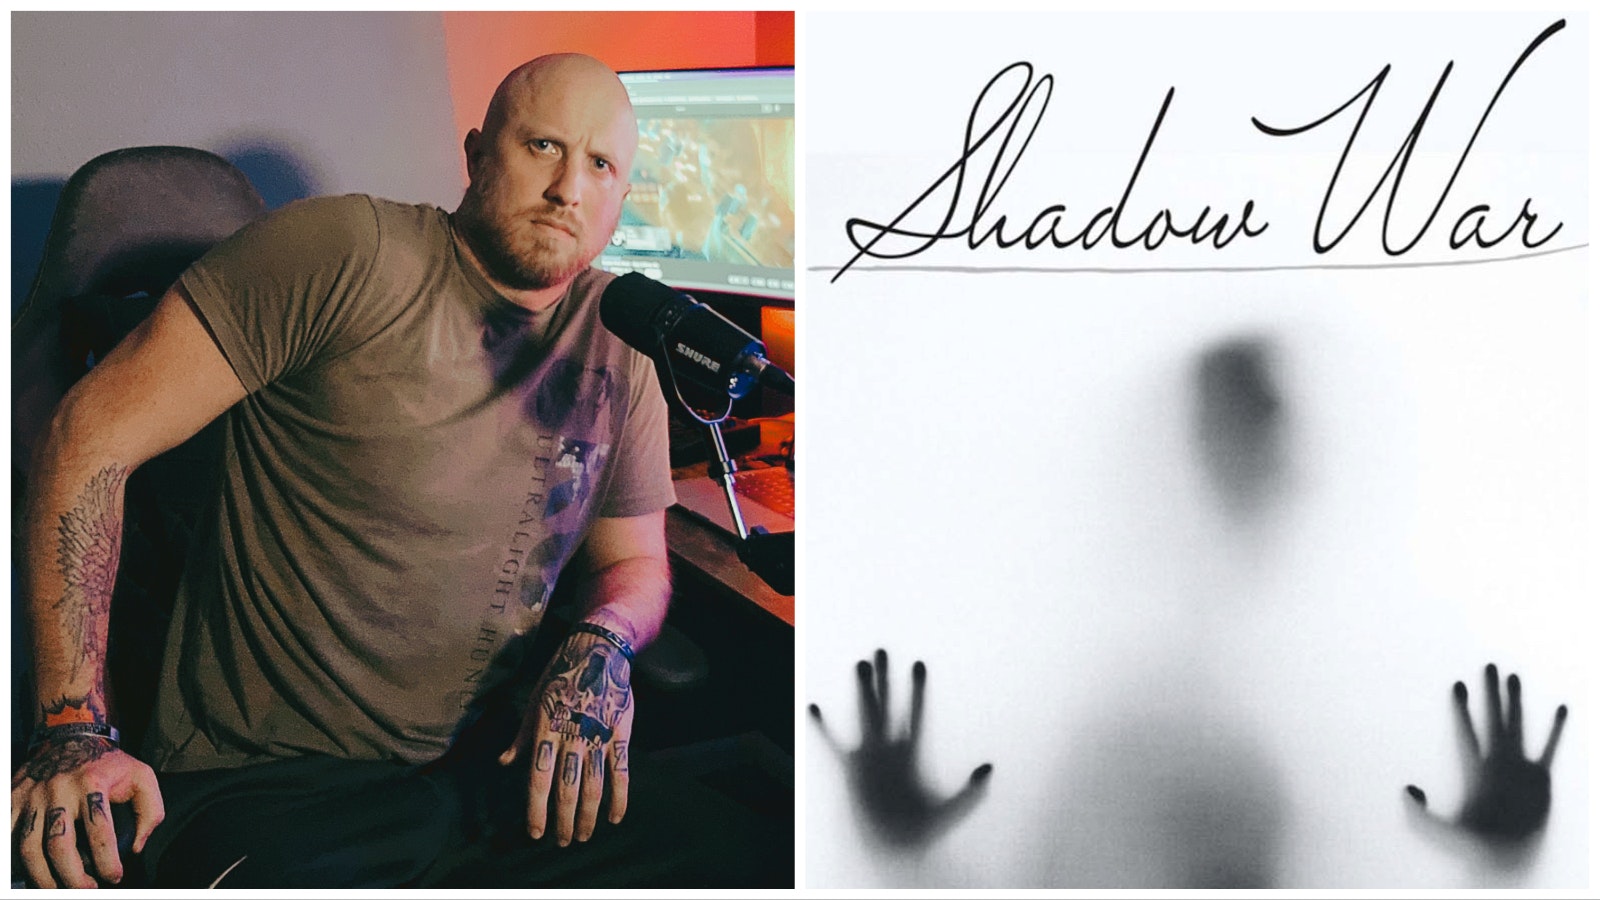 Michael Watts and shadow war 3 6 23